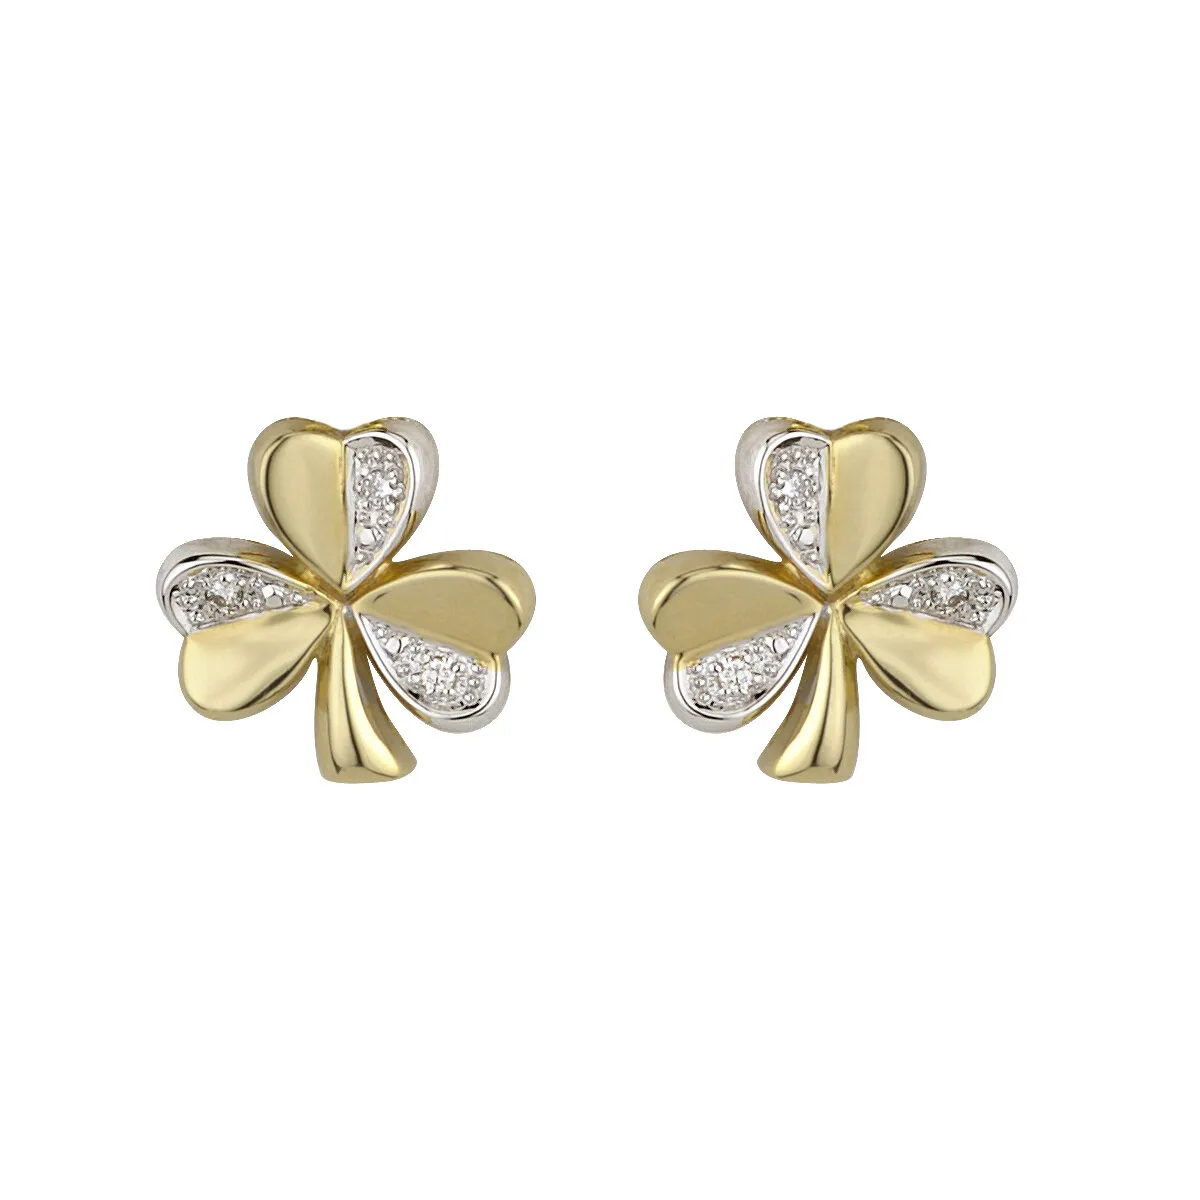 Two Tone Gold Diamond Shamrock Earrings1...